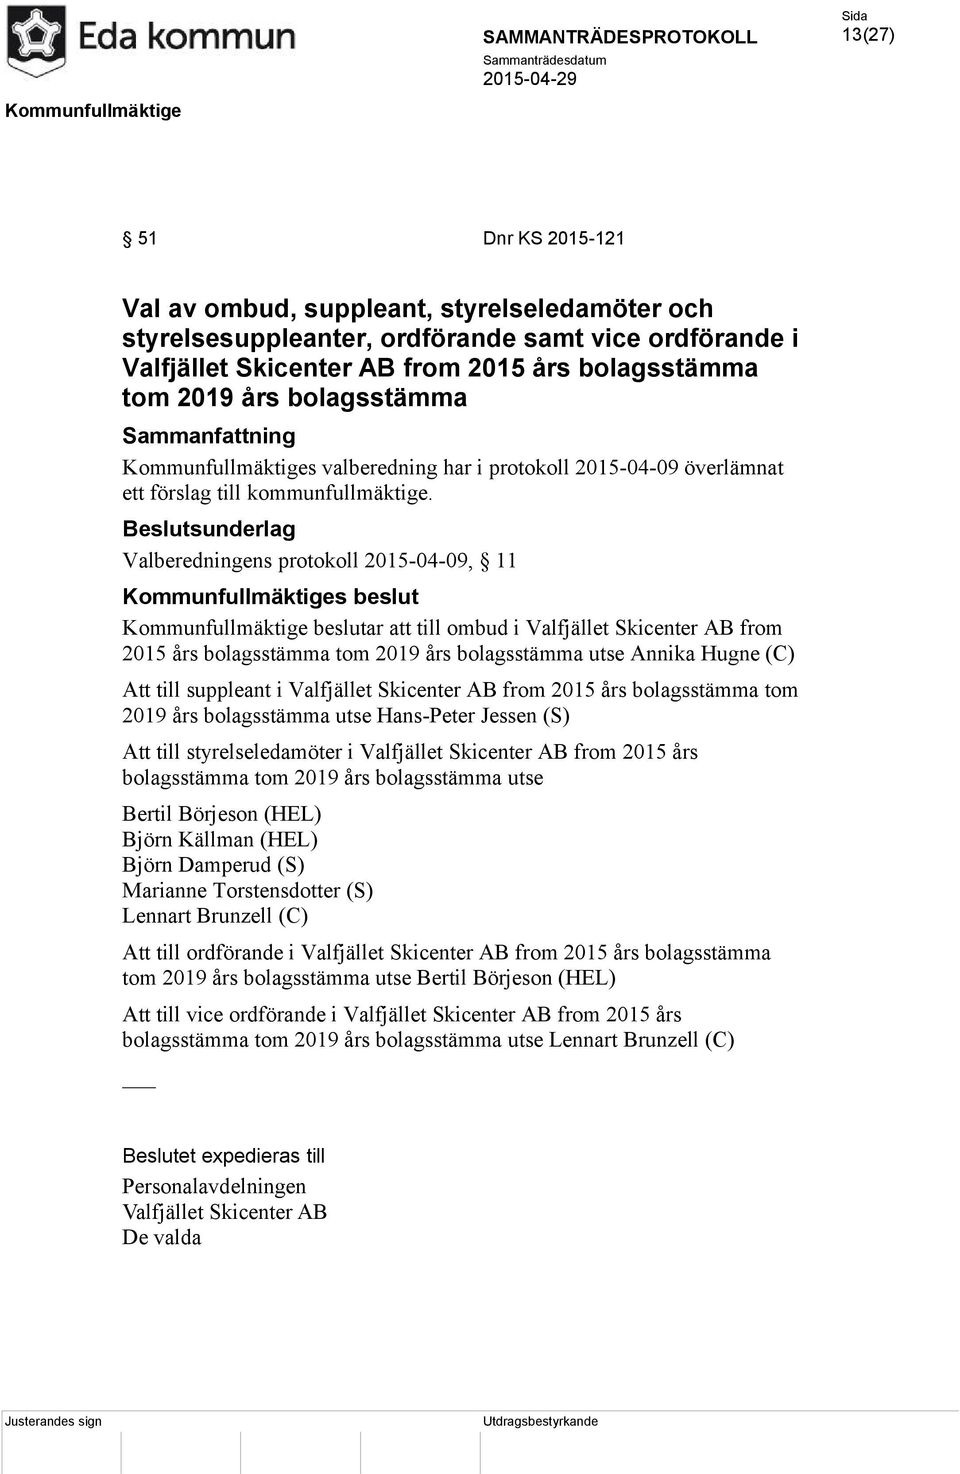 Valberedningens protokoll 2015-04-09, 11 Kommunfullmäktige beslutar att till ombud i Valfjället Skicenter AB from 2015 års bolagsstämma tom 2019 års bolagsstämma utse Annika Hugne (C) Att till